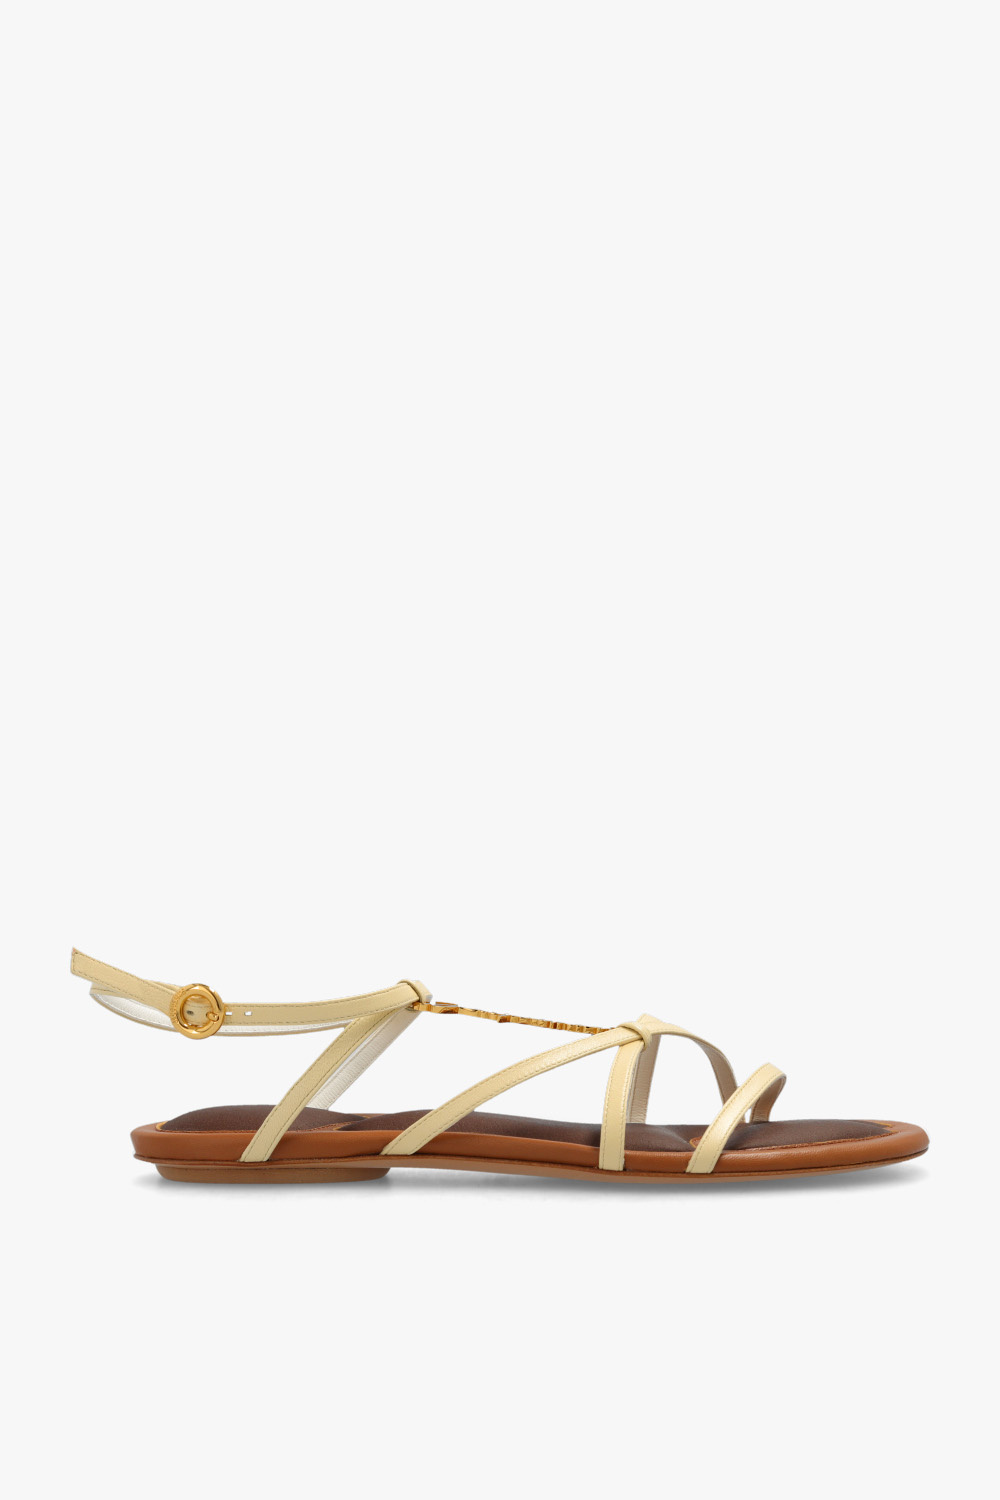 Jacquemus ‘Pralu’ sandals